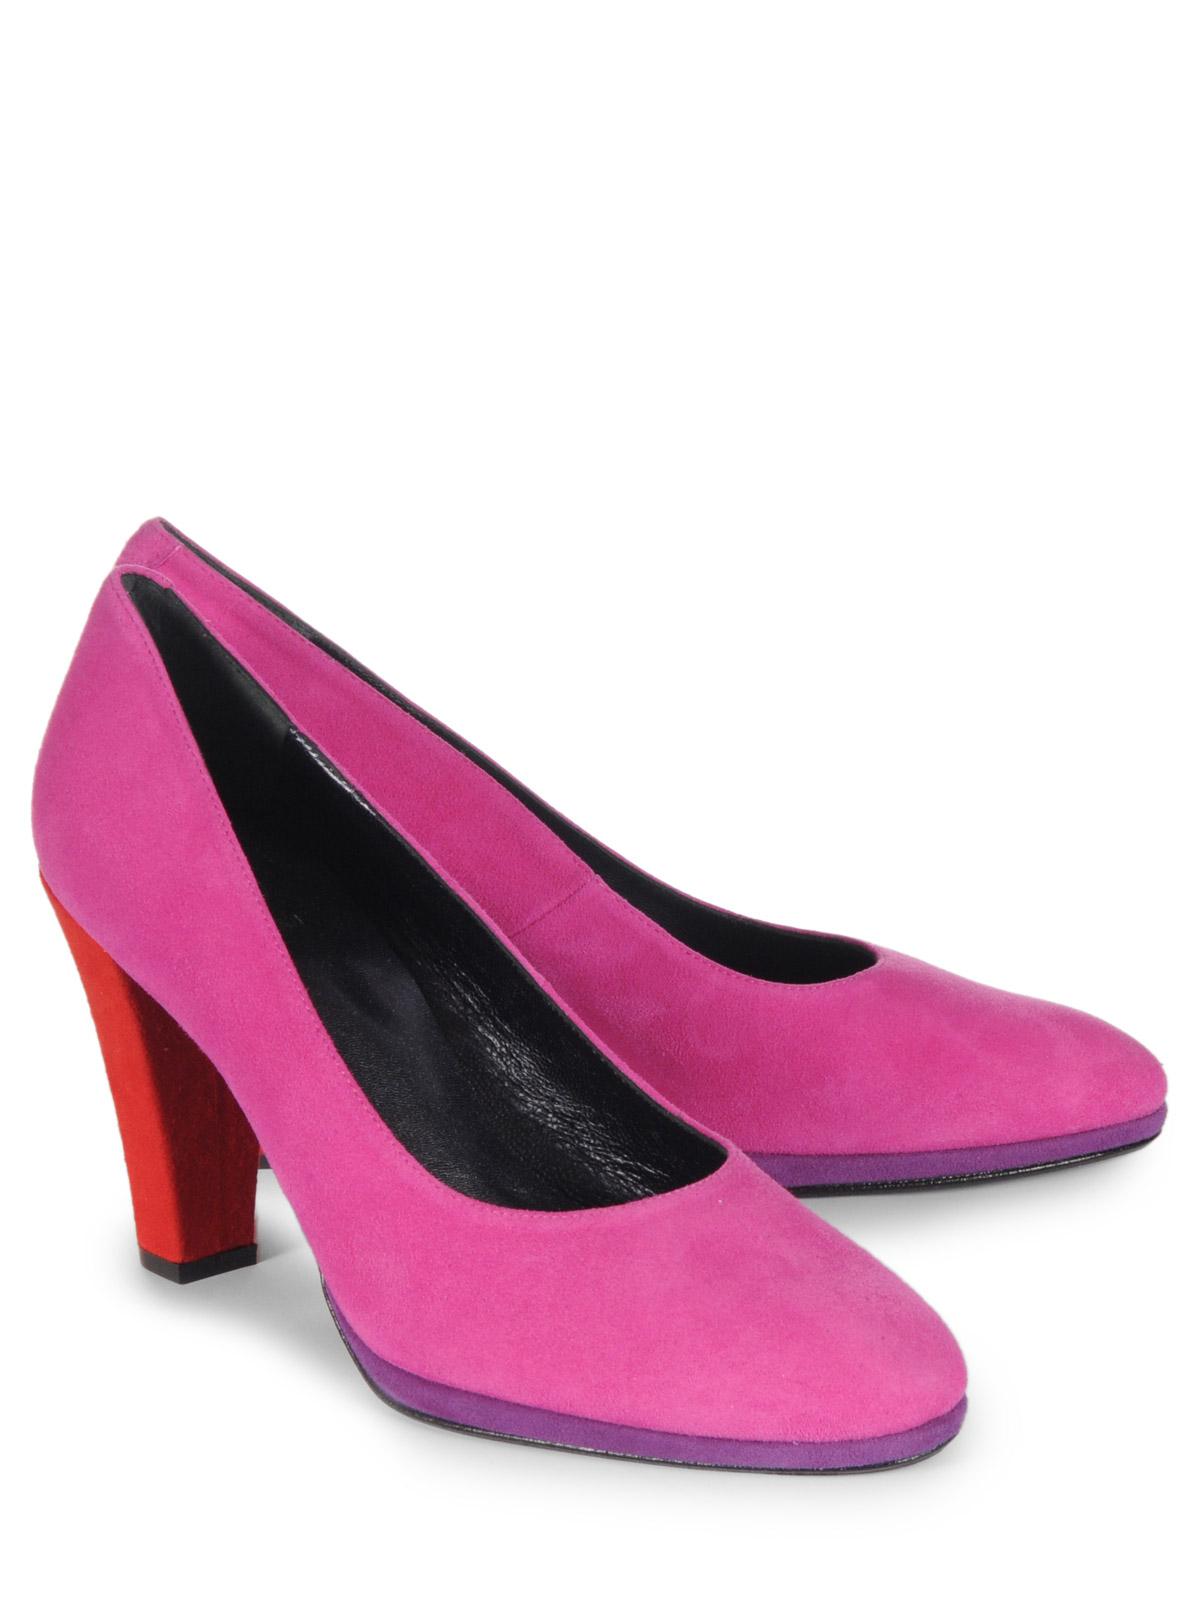 Foto Otto Kern Zapatos pumps rosa EU: 38